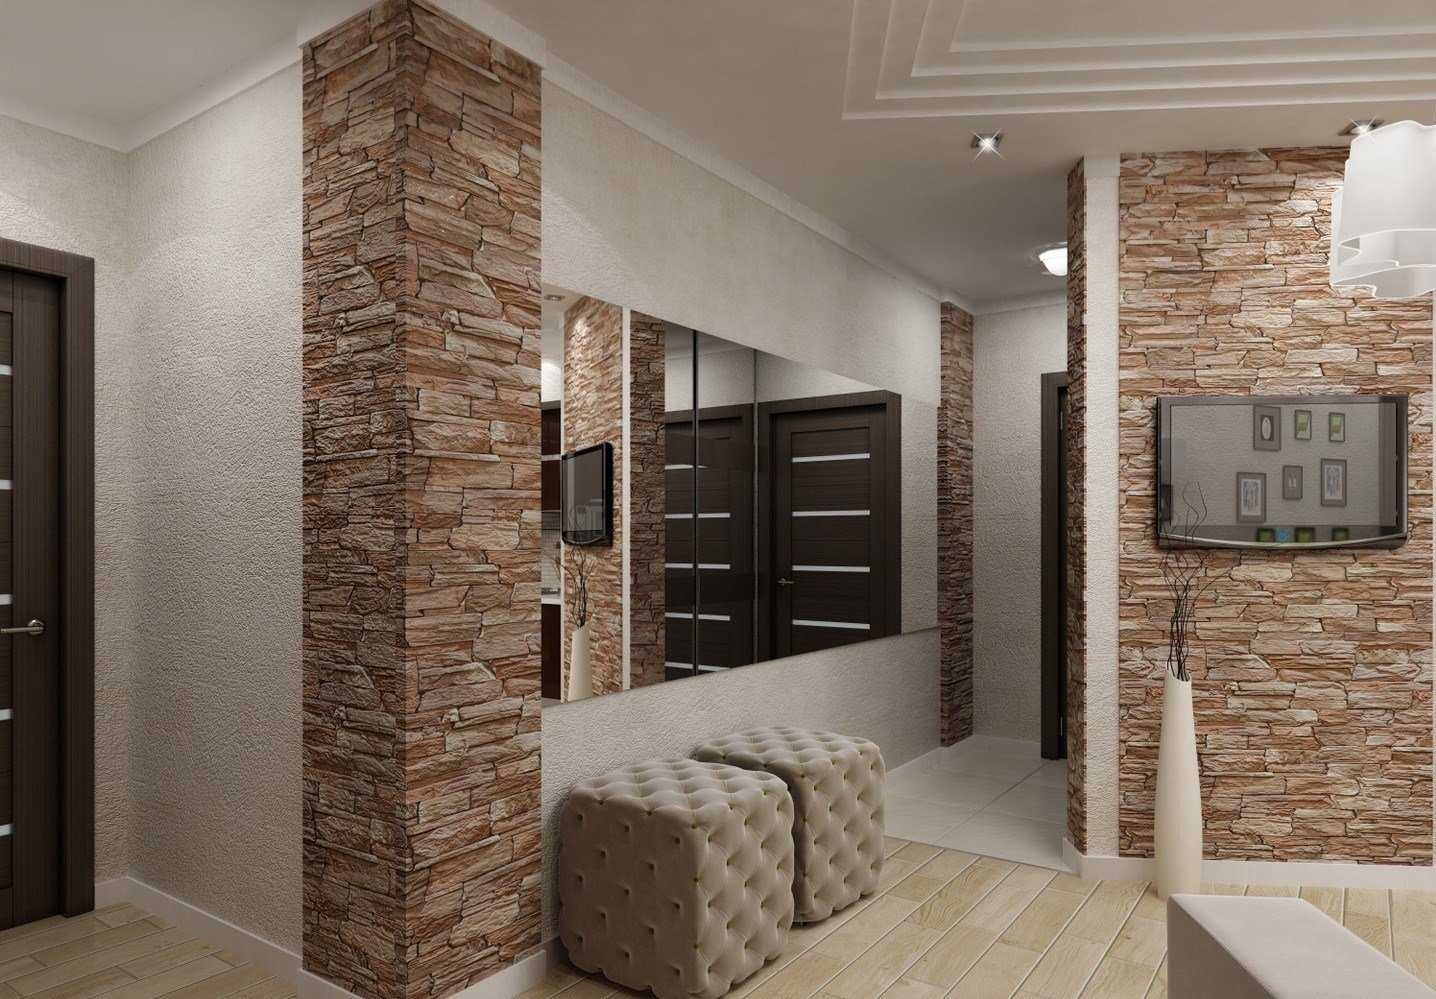 Внутренняя отделка стен с помощью декоративных панелей под кирпич - практичный и экономный способ преобразить помещение в соответствии с выбранным стилем